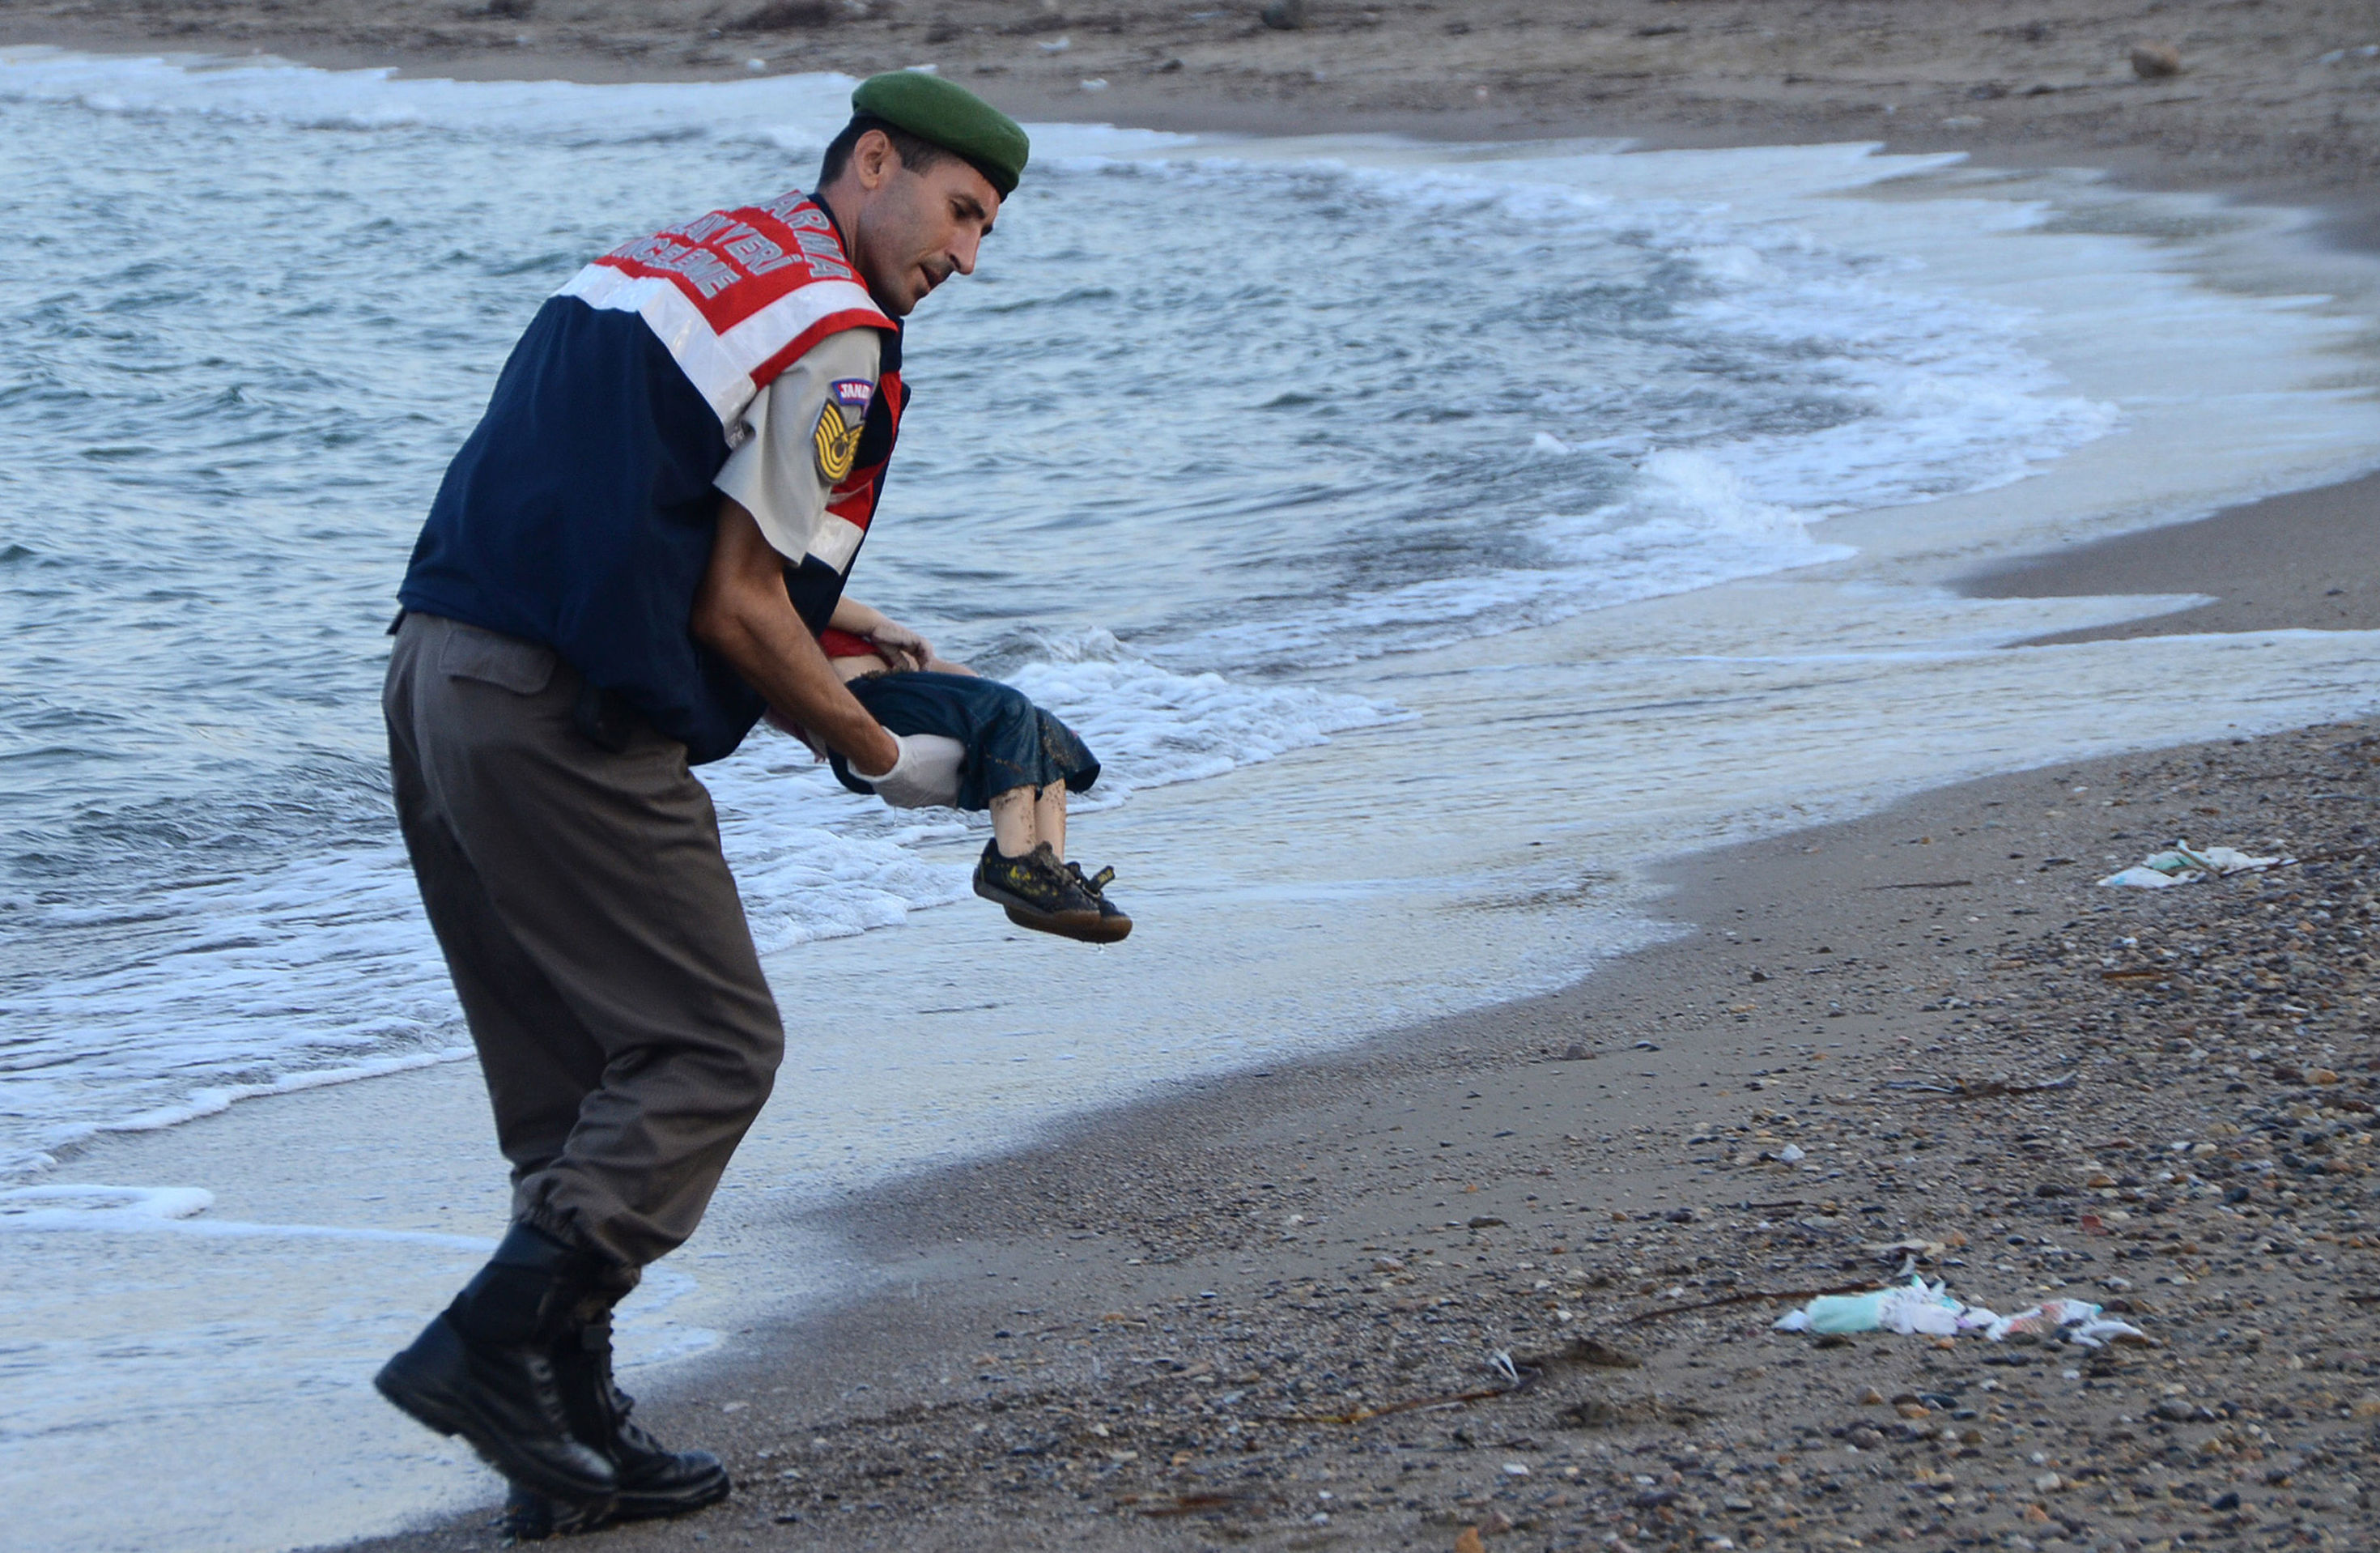 Сотрудник полиции несет тело 3-летнего Айлана Курди, который утонул вместе с матерью и пятилетним братом, пытаясь сбежать из захваченного "ИГ" города. Тело мальчика нашли на берегу Средиземного моря, 2 сентября 2015